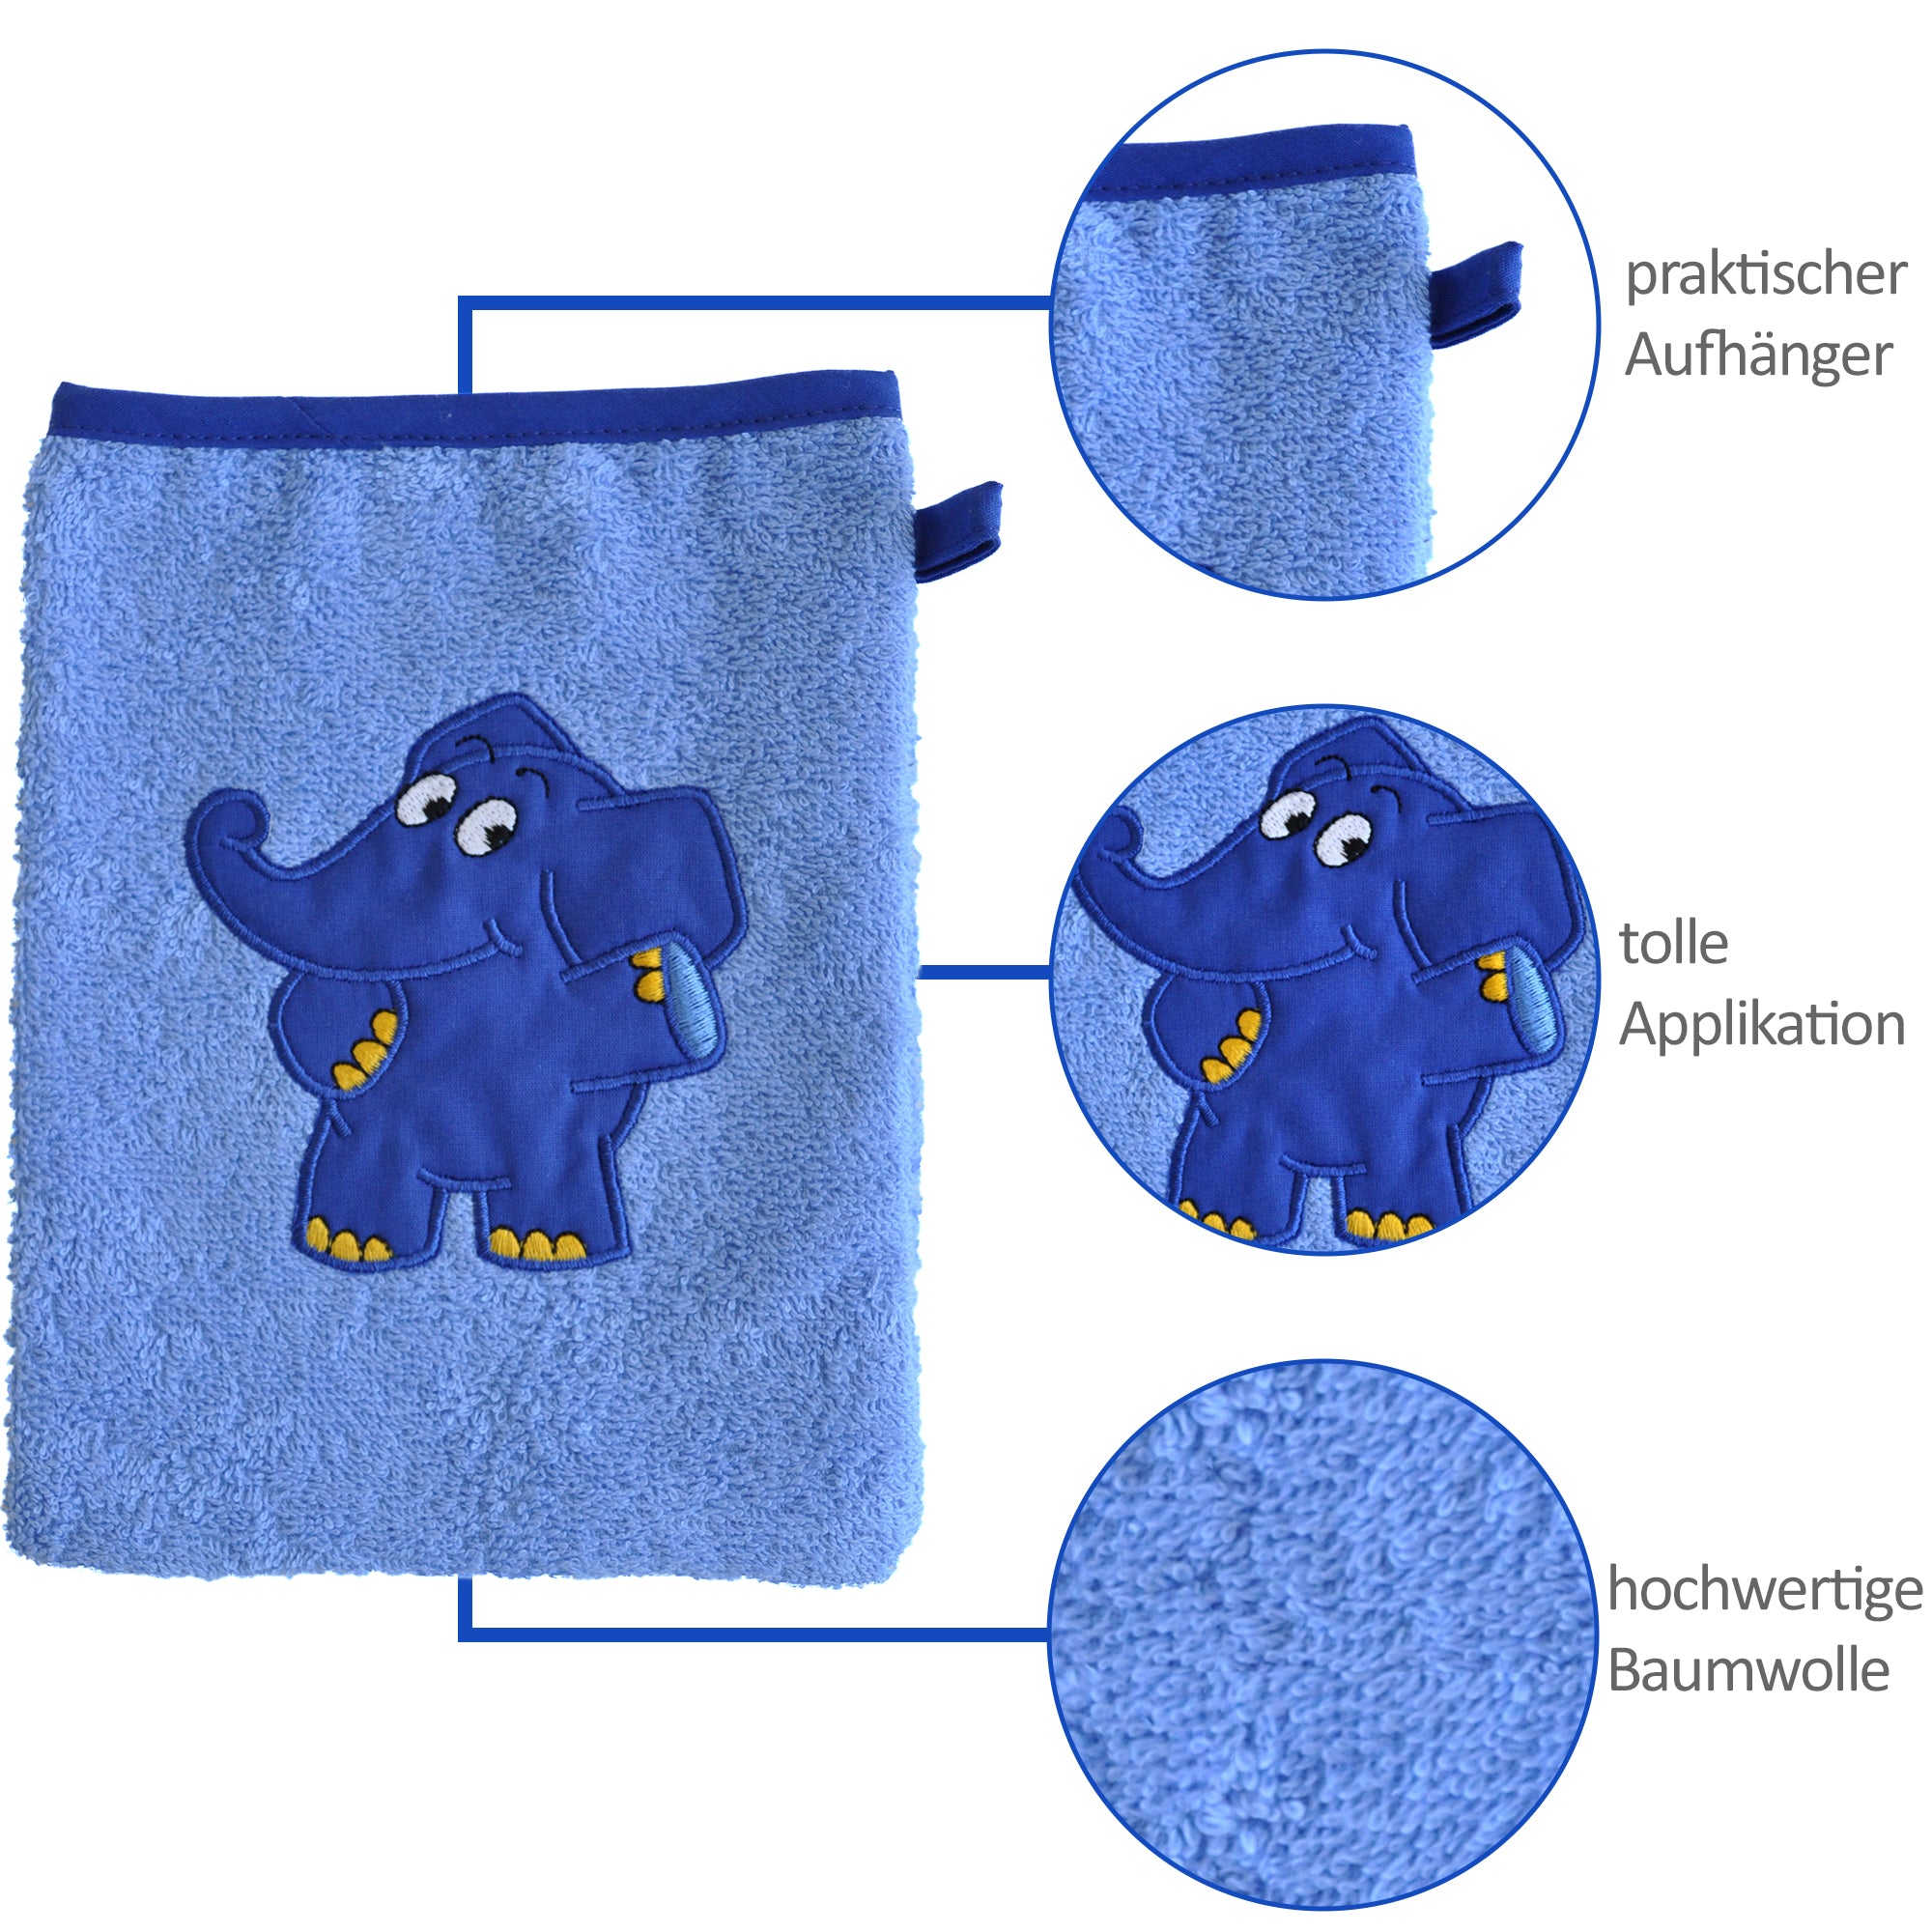 Waschhandschuh mit dem blauen Elefanten